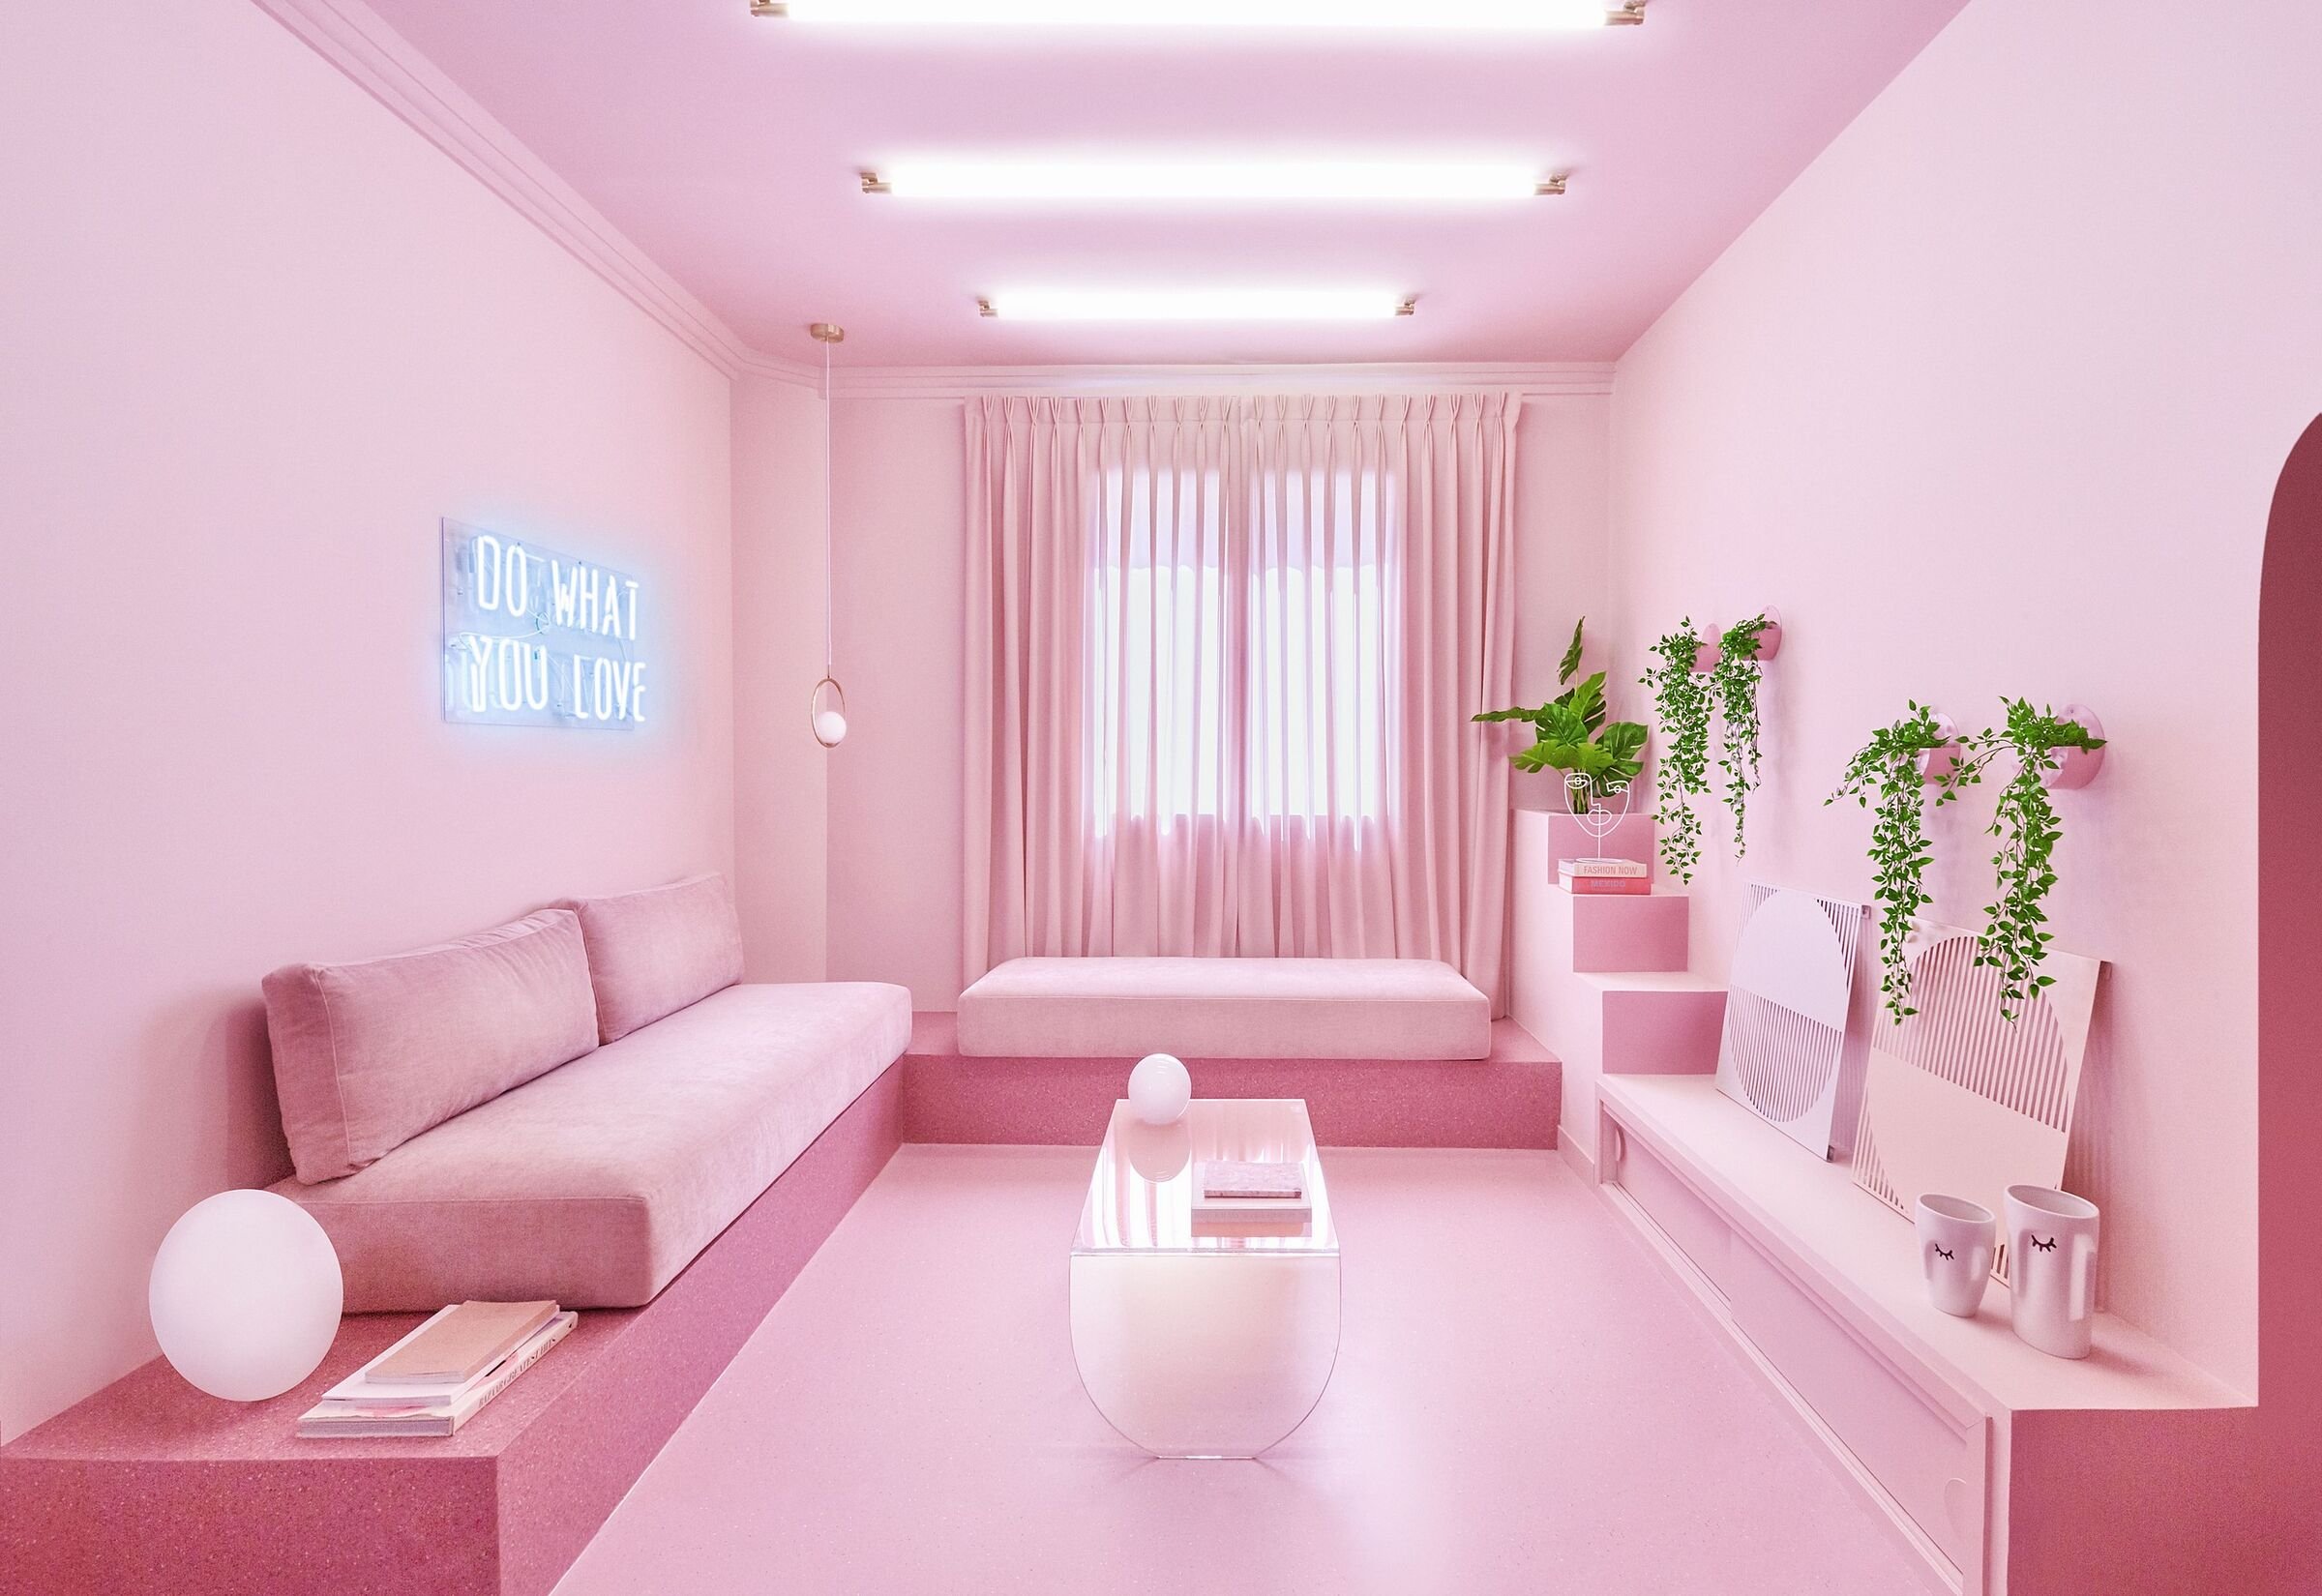 Совсем розовый. Розовый интерьер комнаты. Розовый цвет в интерьере. Розовый цвет в интерьере спальни. Розовая комната.